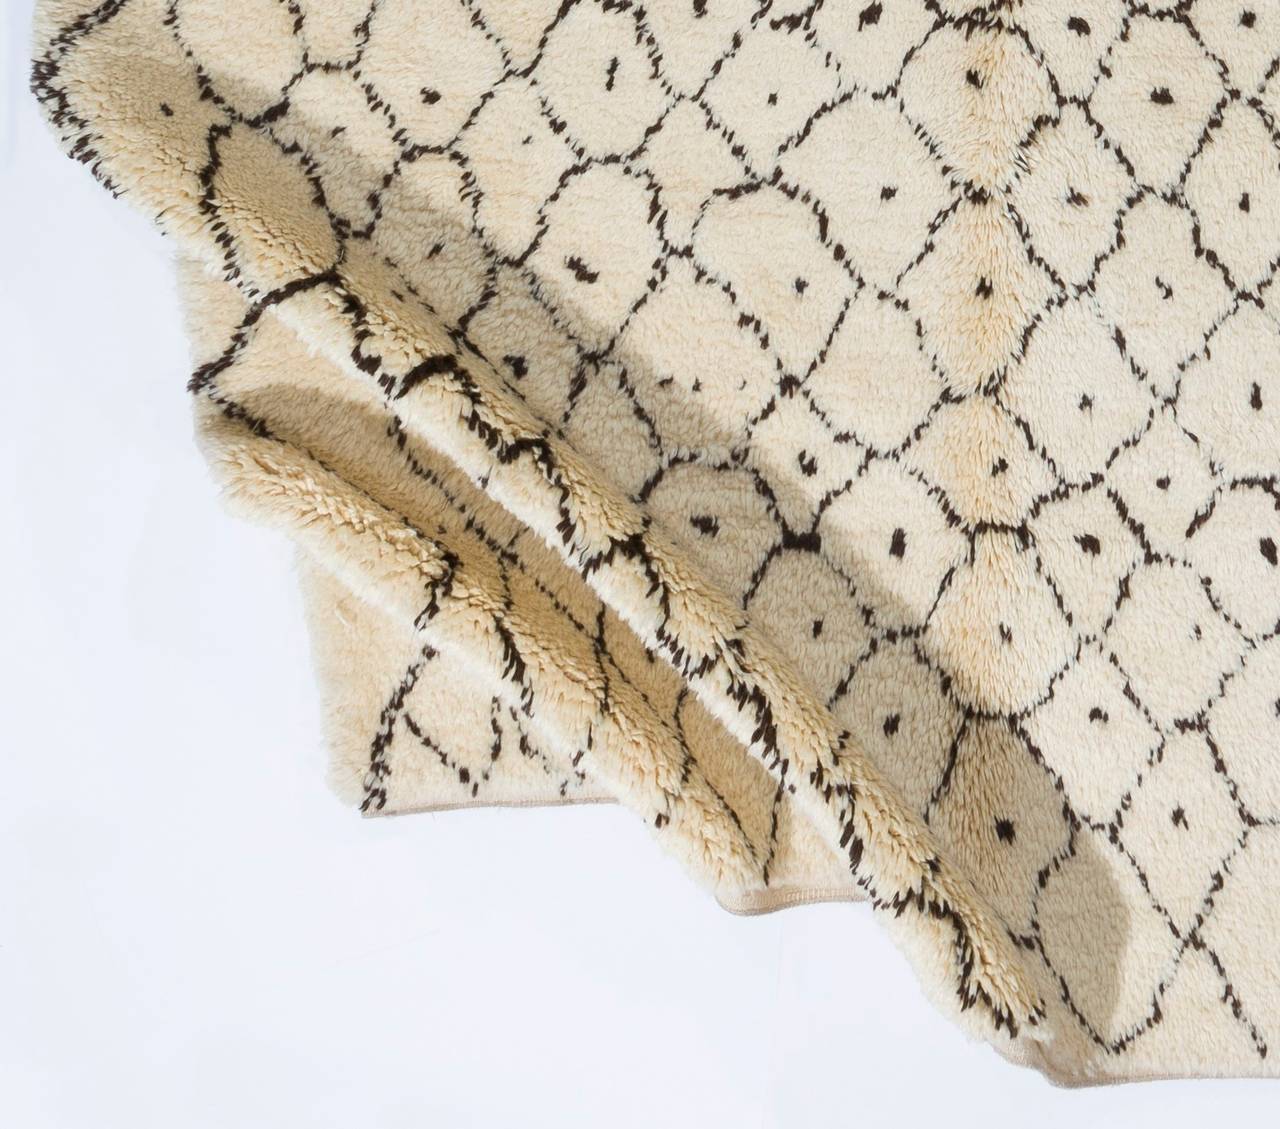 Tapis marocain contemporain noué à la main en laine de mouton naturelle non teintée ivoire ou crème et marron. 

Ces tapis noués à la main sont fabriqués à partir de zéro dans notre atelier situé en Anatolie centrale, célèbre pour être l'un des plus